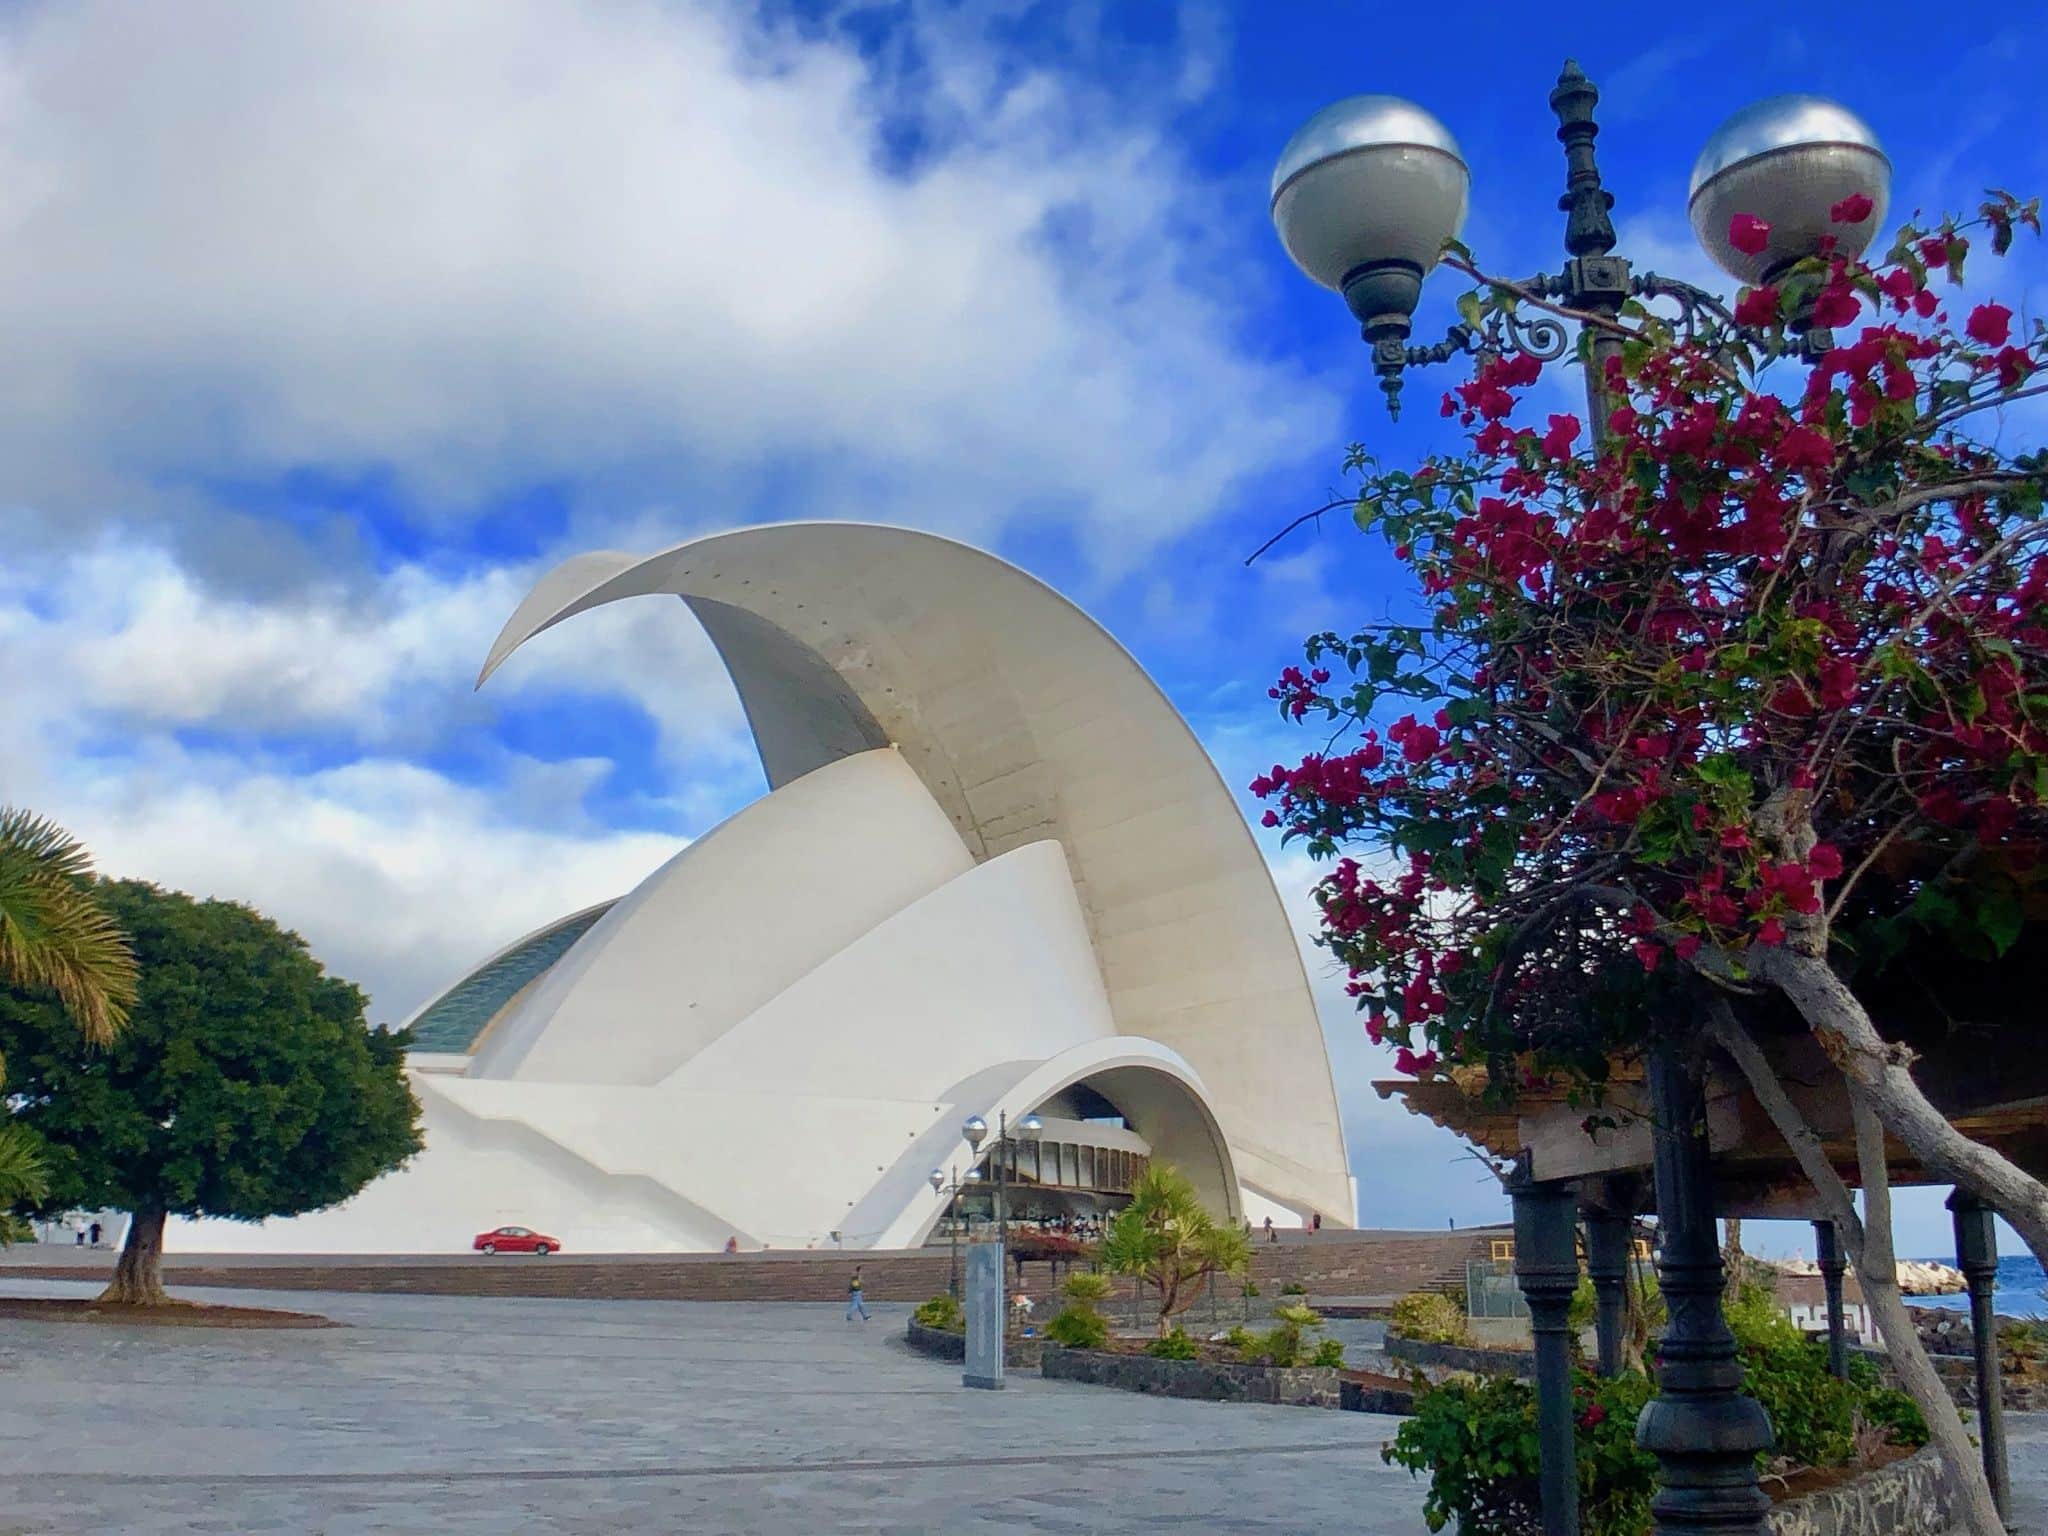 Eines der Wahrzeichen von Teneriffa: das Auditorio de Tenerife, eine große Konzerthalle. Foto: Sascha Tegtmeyer